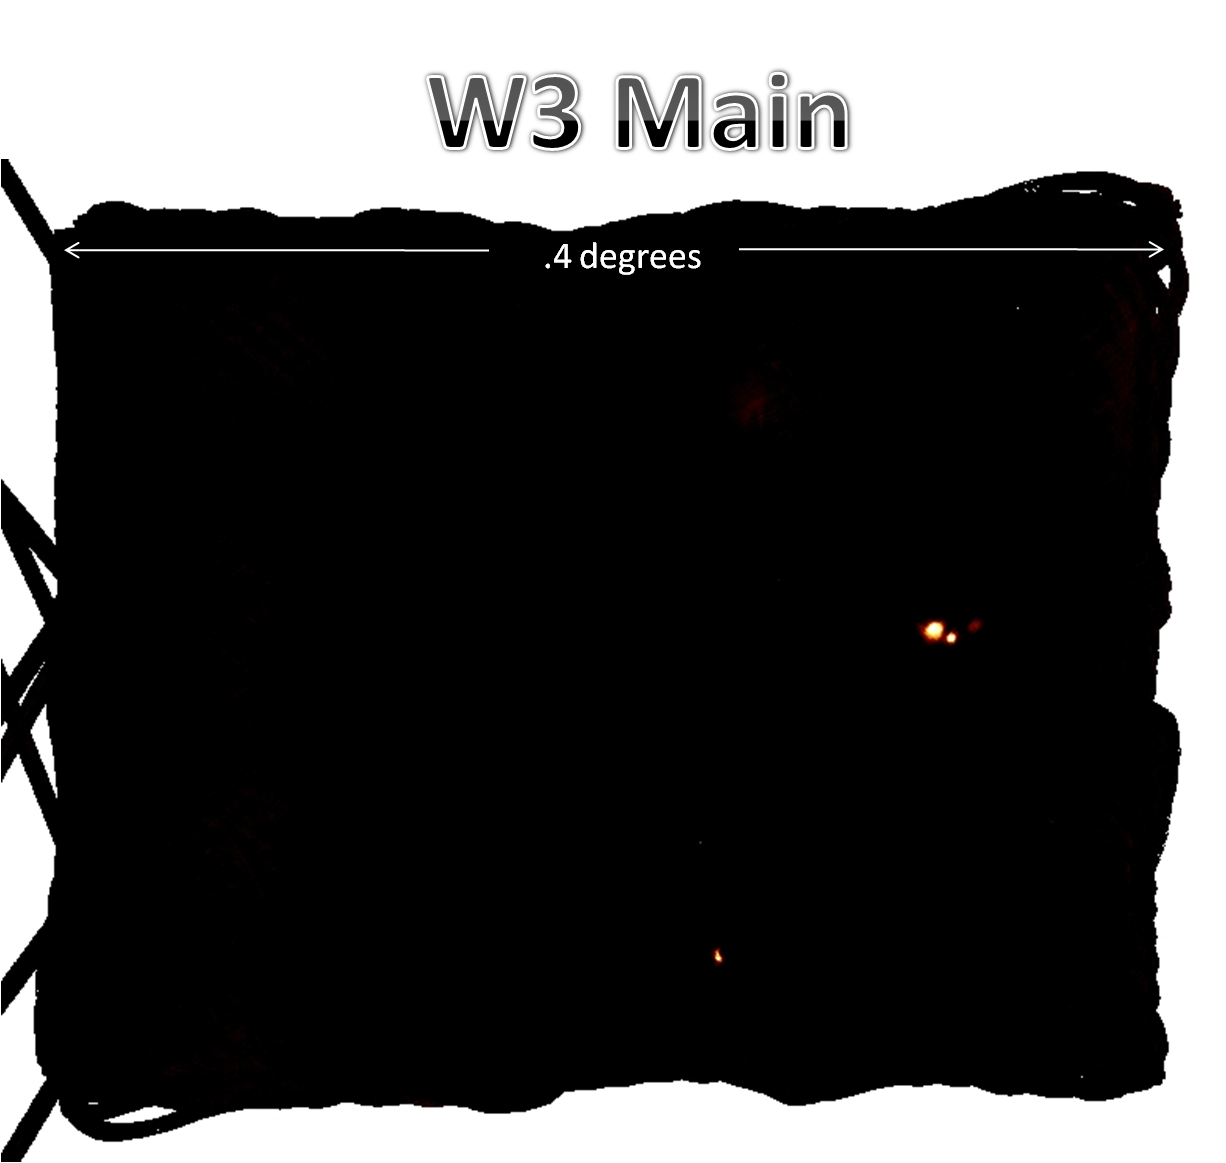 MUSTANG+GBT 3mm Map of the W3 region, 0.4 deg x 0.3 deg